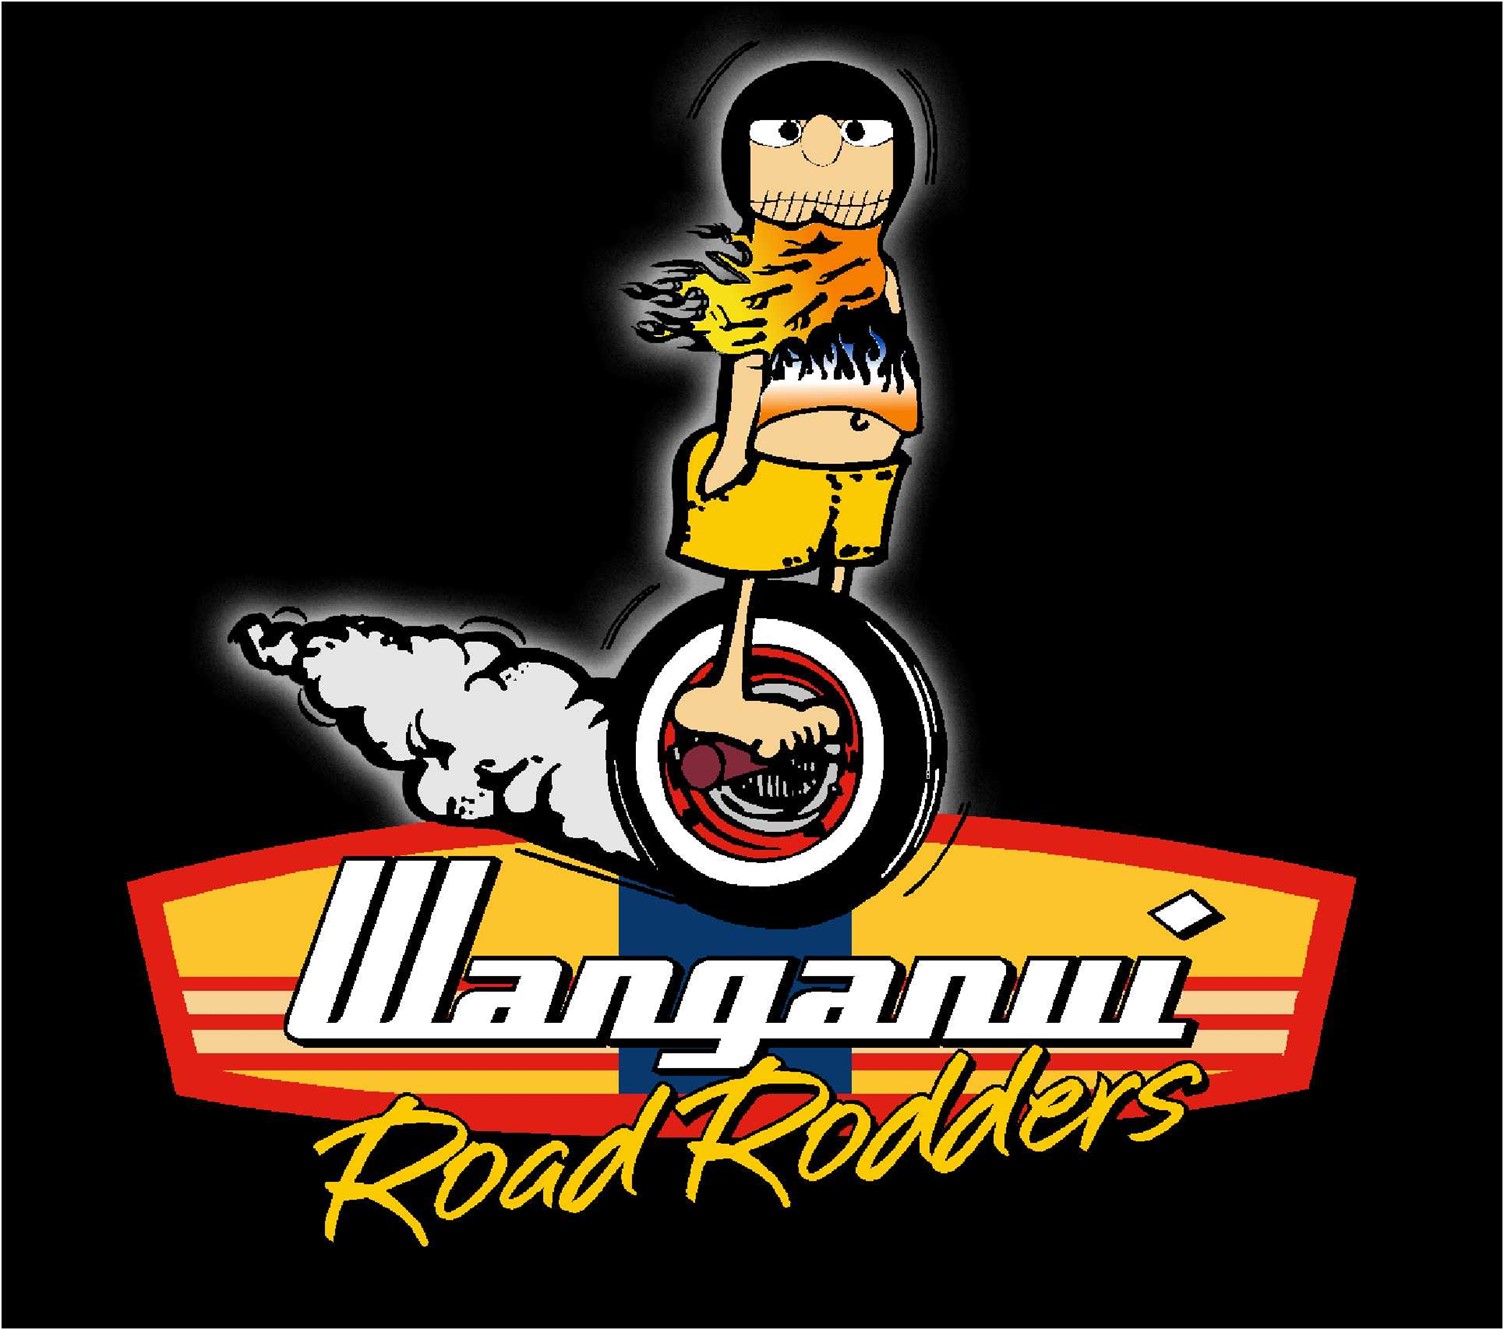 Wanganui Road Rodders - 1/8 Mile Street Drags